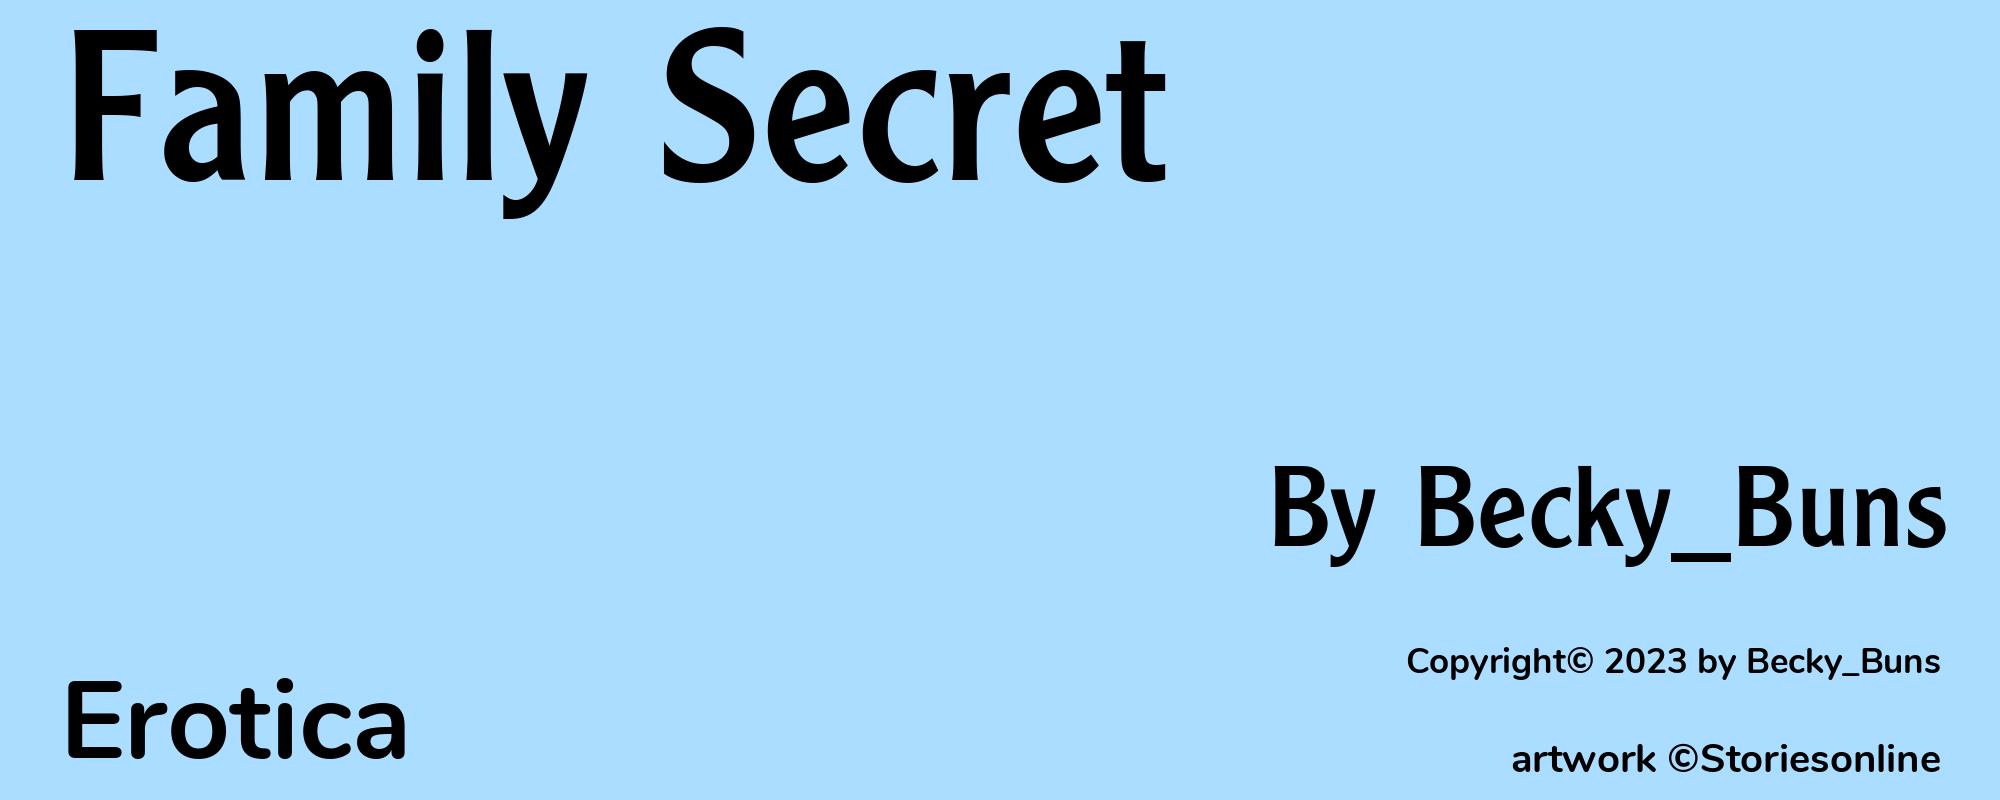 Family Secret - Cover